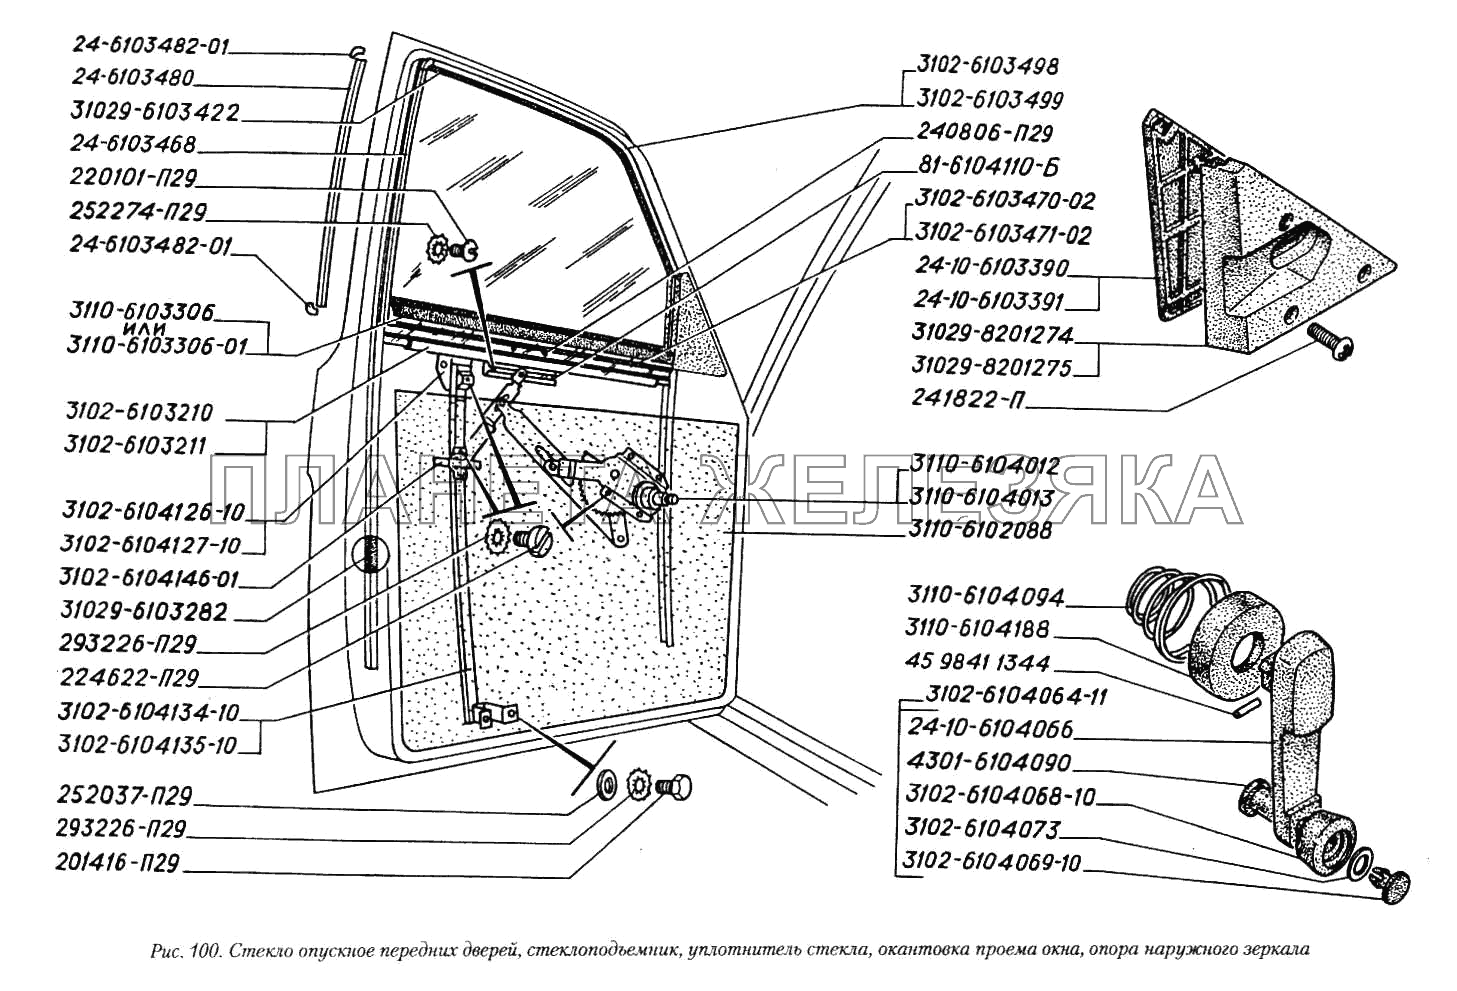 Стекло опускное передних дверей, стеклоподъемник, уплотнитель стекла, окантовка проема окна, опора наружного зеркала ГАЗ-3110